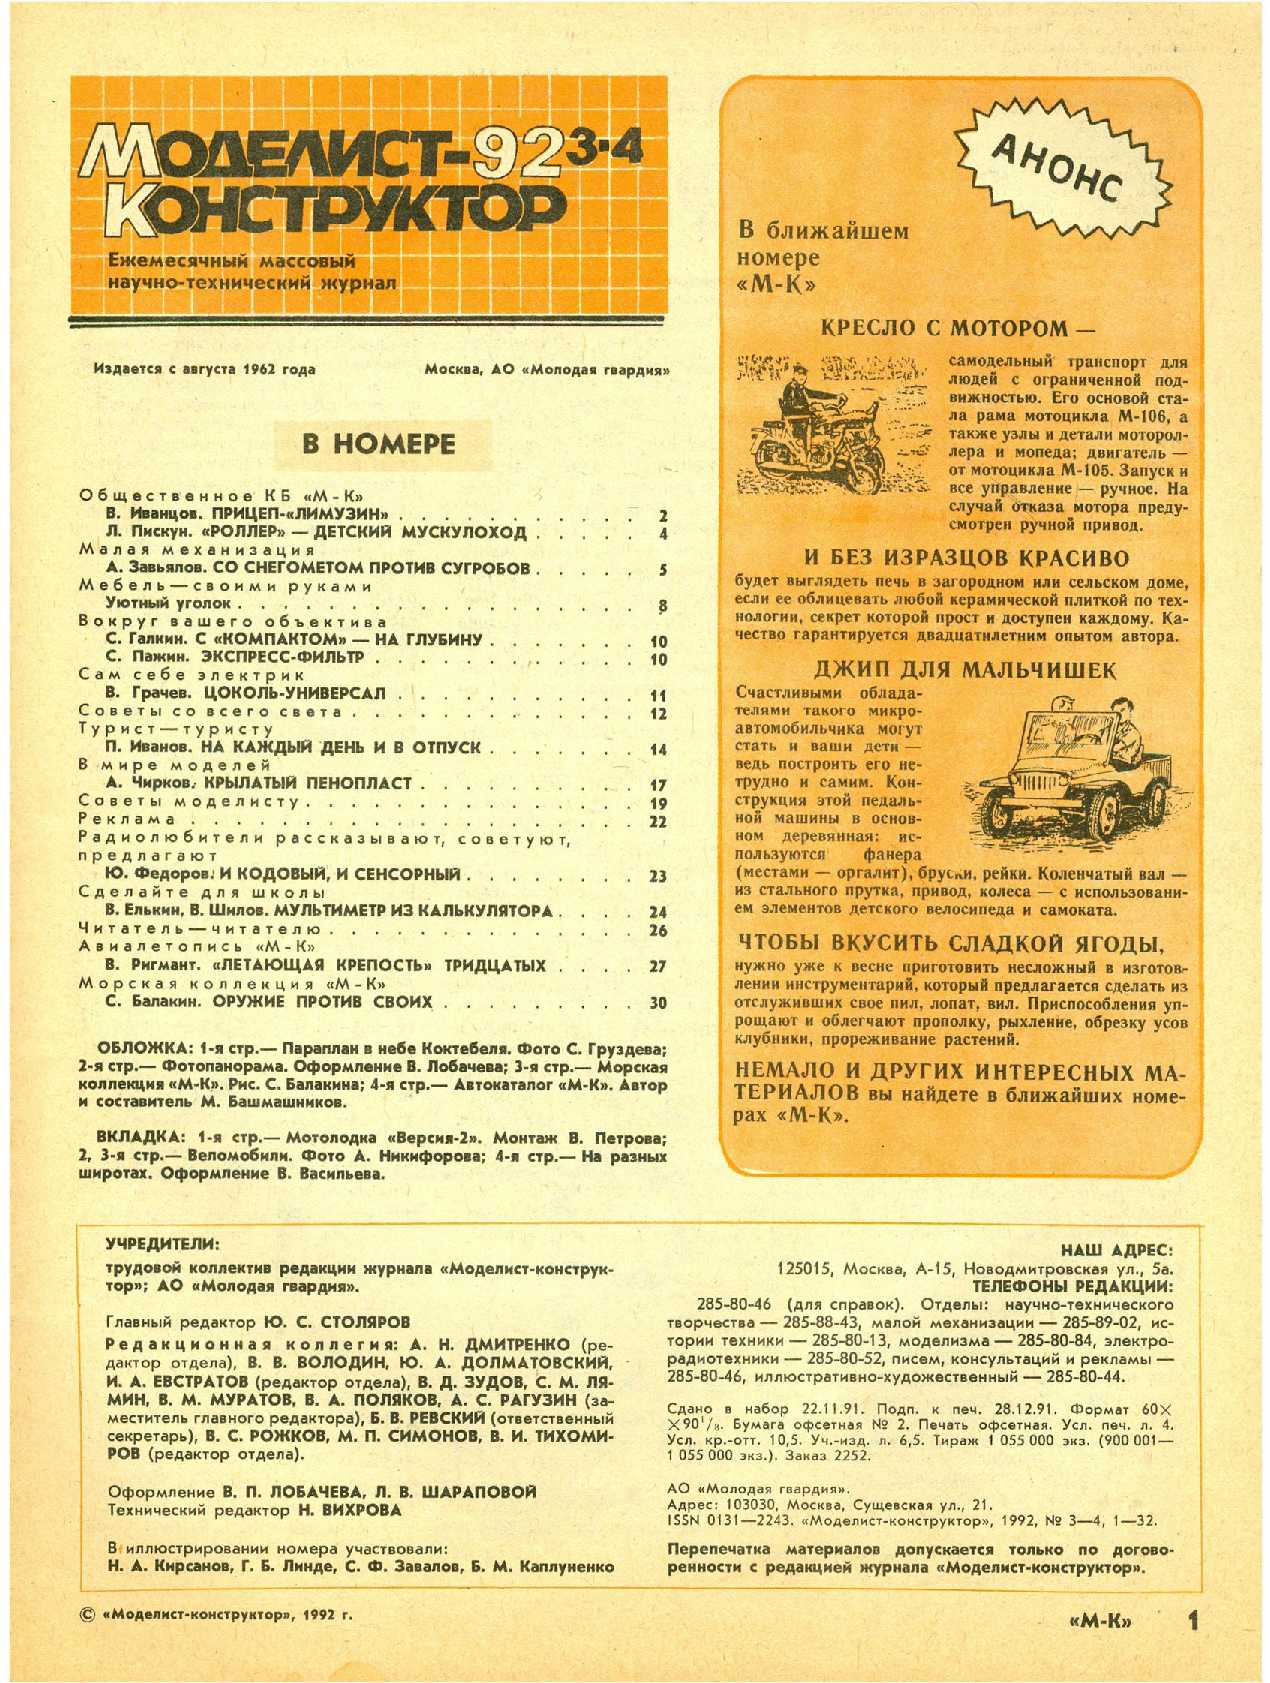 МК 3-4, 1992, 1 c.